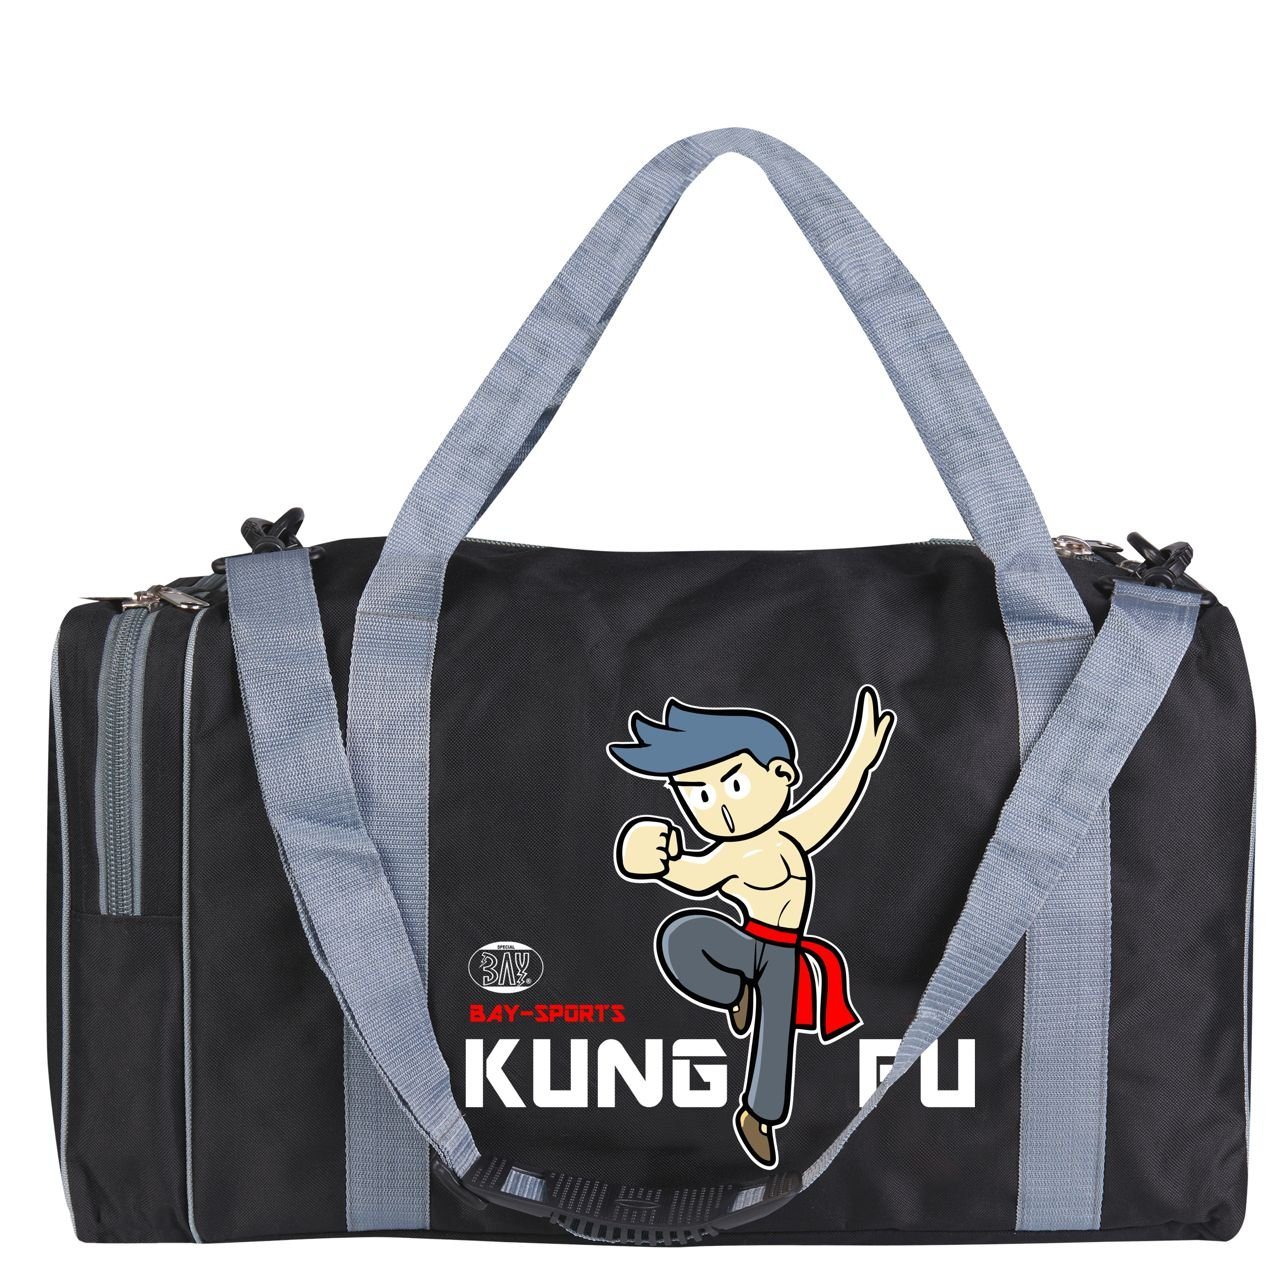 BAY-Sports Sporttasche Sporttasche für Kinder Kung Fu schwarz/grau 50 cm von BAY-Sports